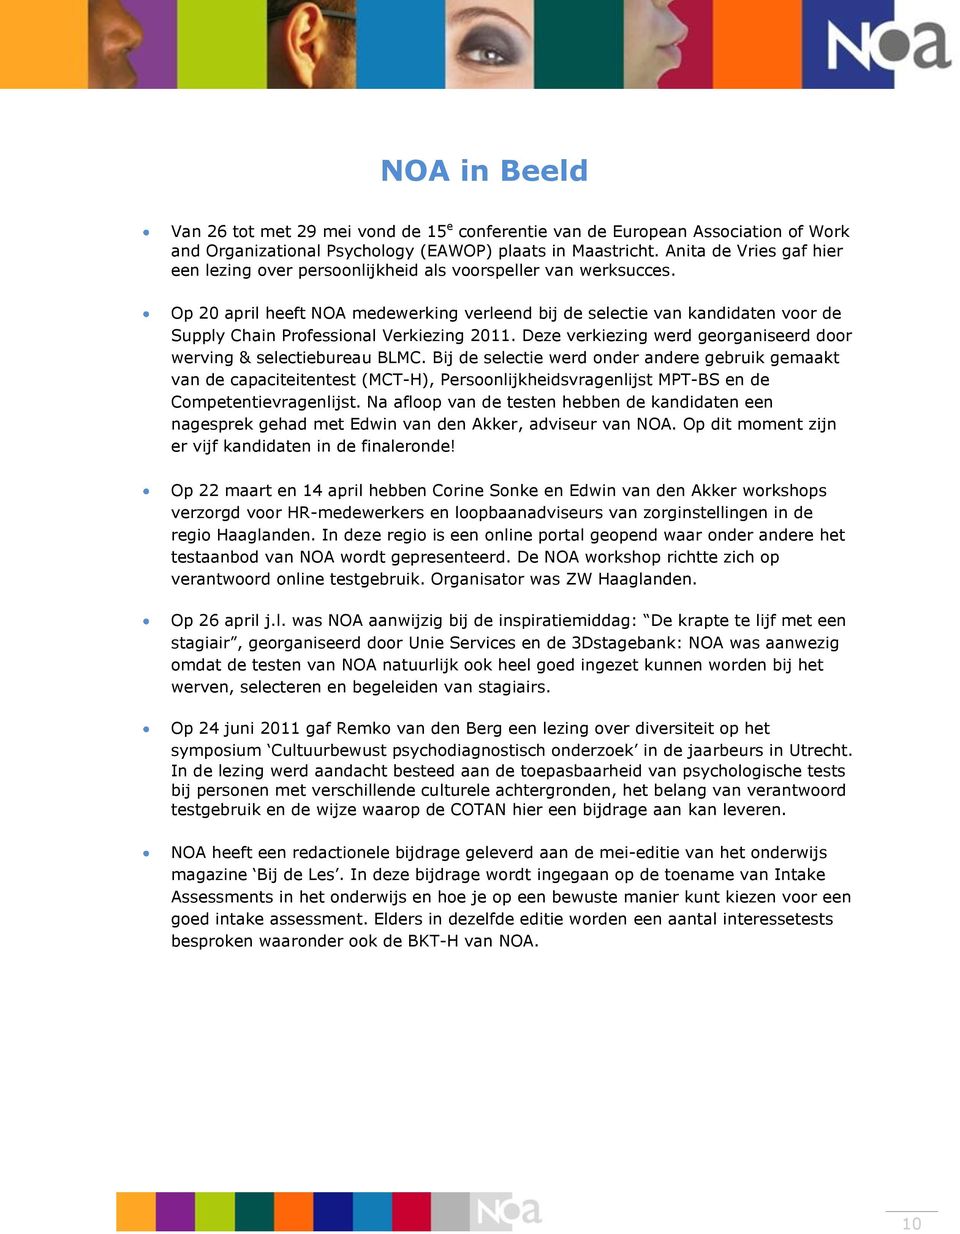 Op 20 april heeft NOA medewerking verleend bij de selectie van kandidaten voor de Supply Chain Professional Verkiezing 2011. Deze verkiezing werd georganiseerd door werving & selectiebureau BLMC.